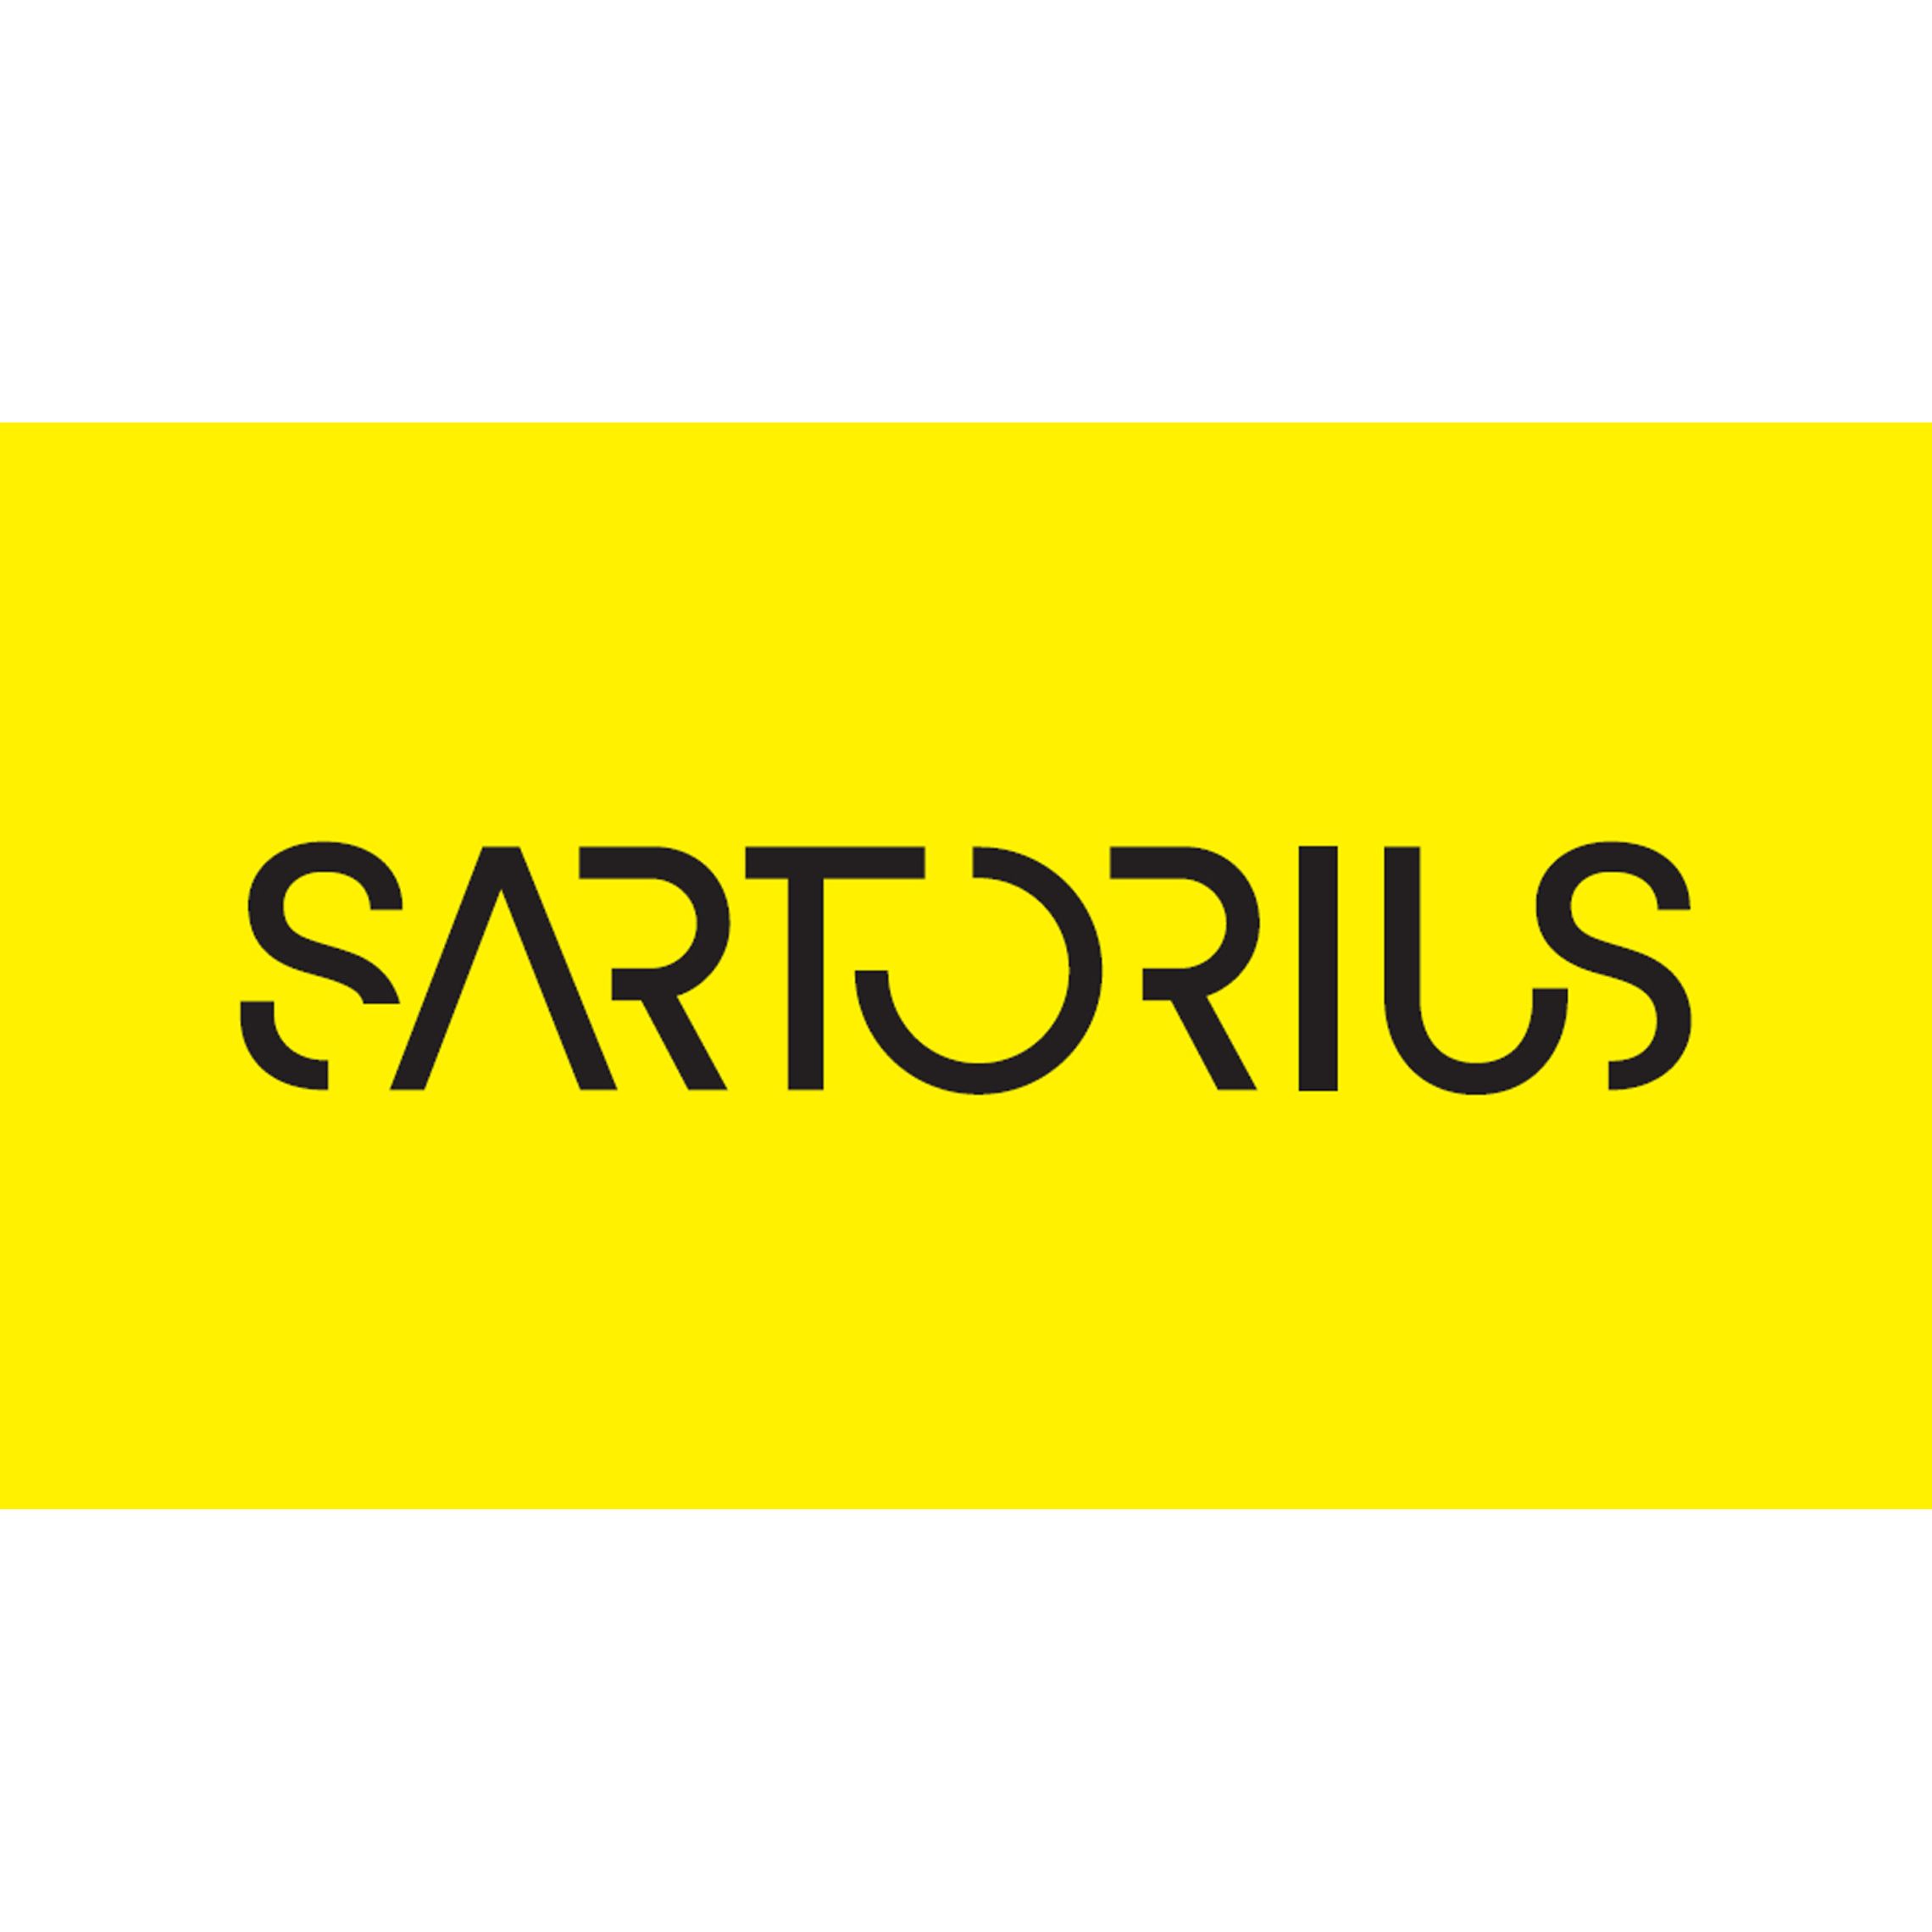 (c) Sartorius.com